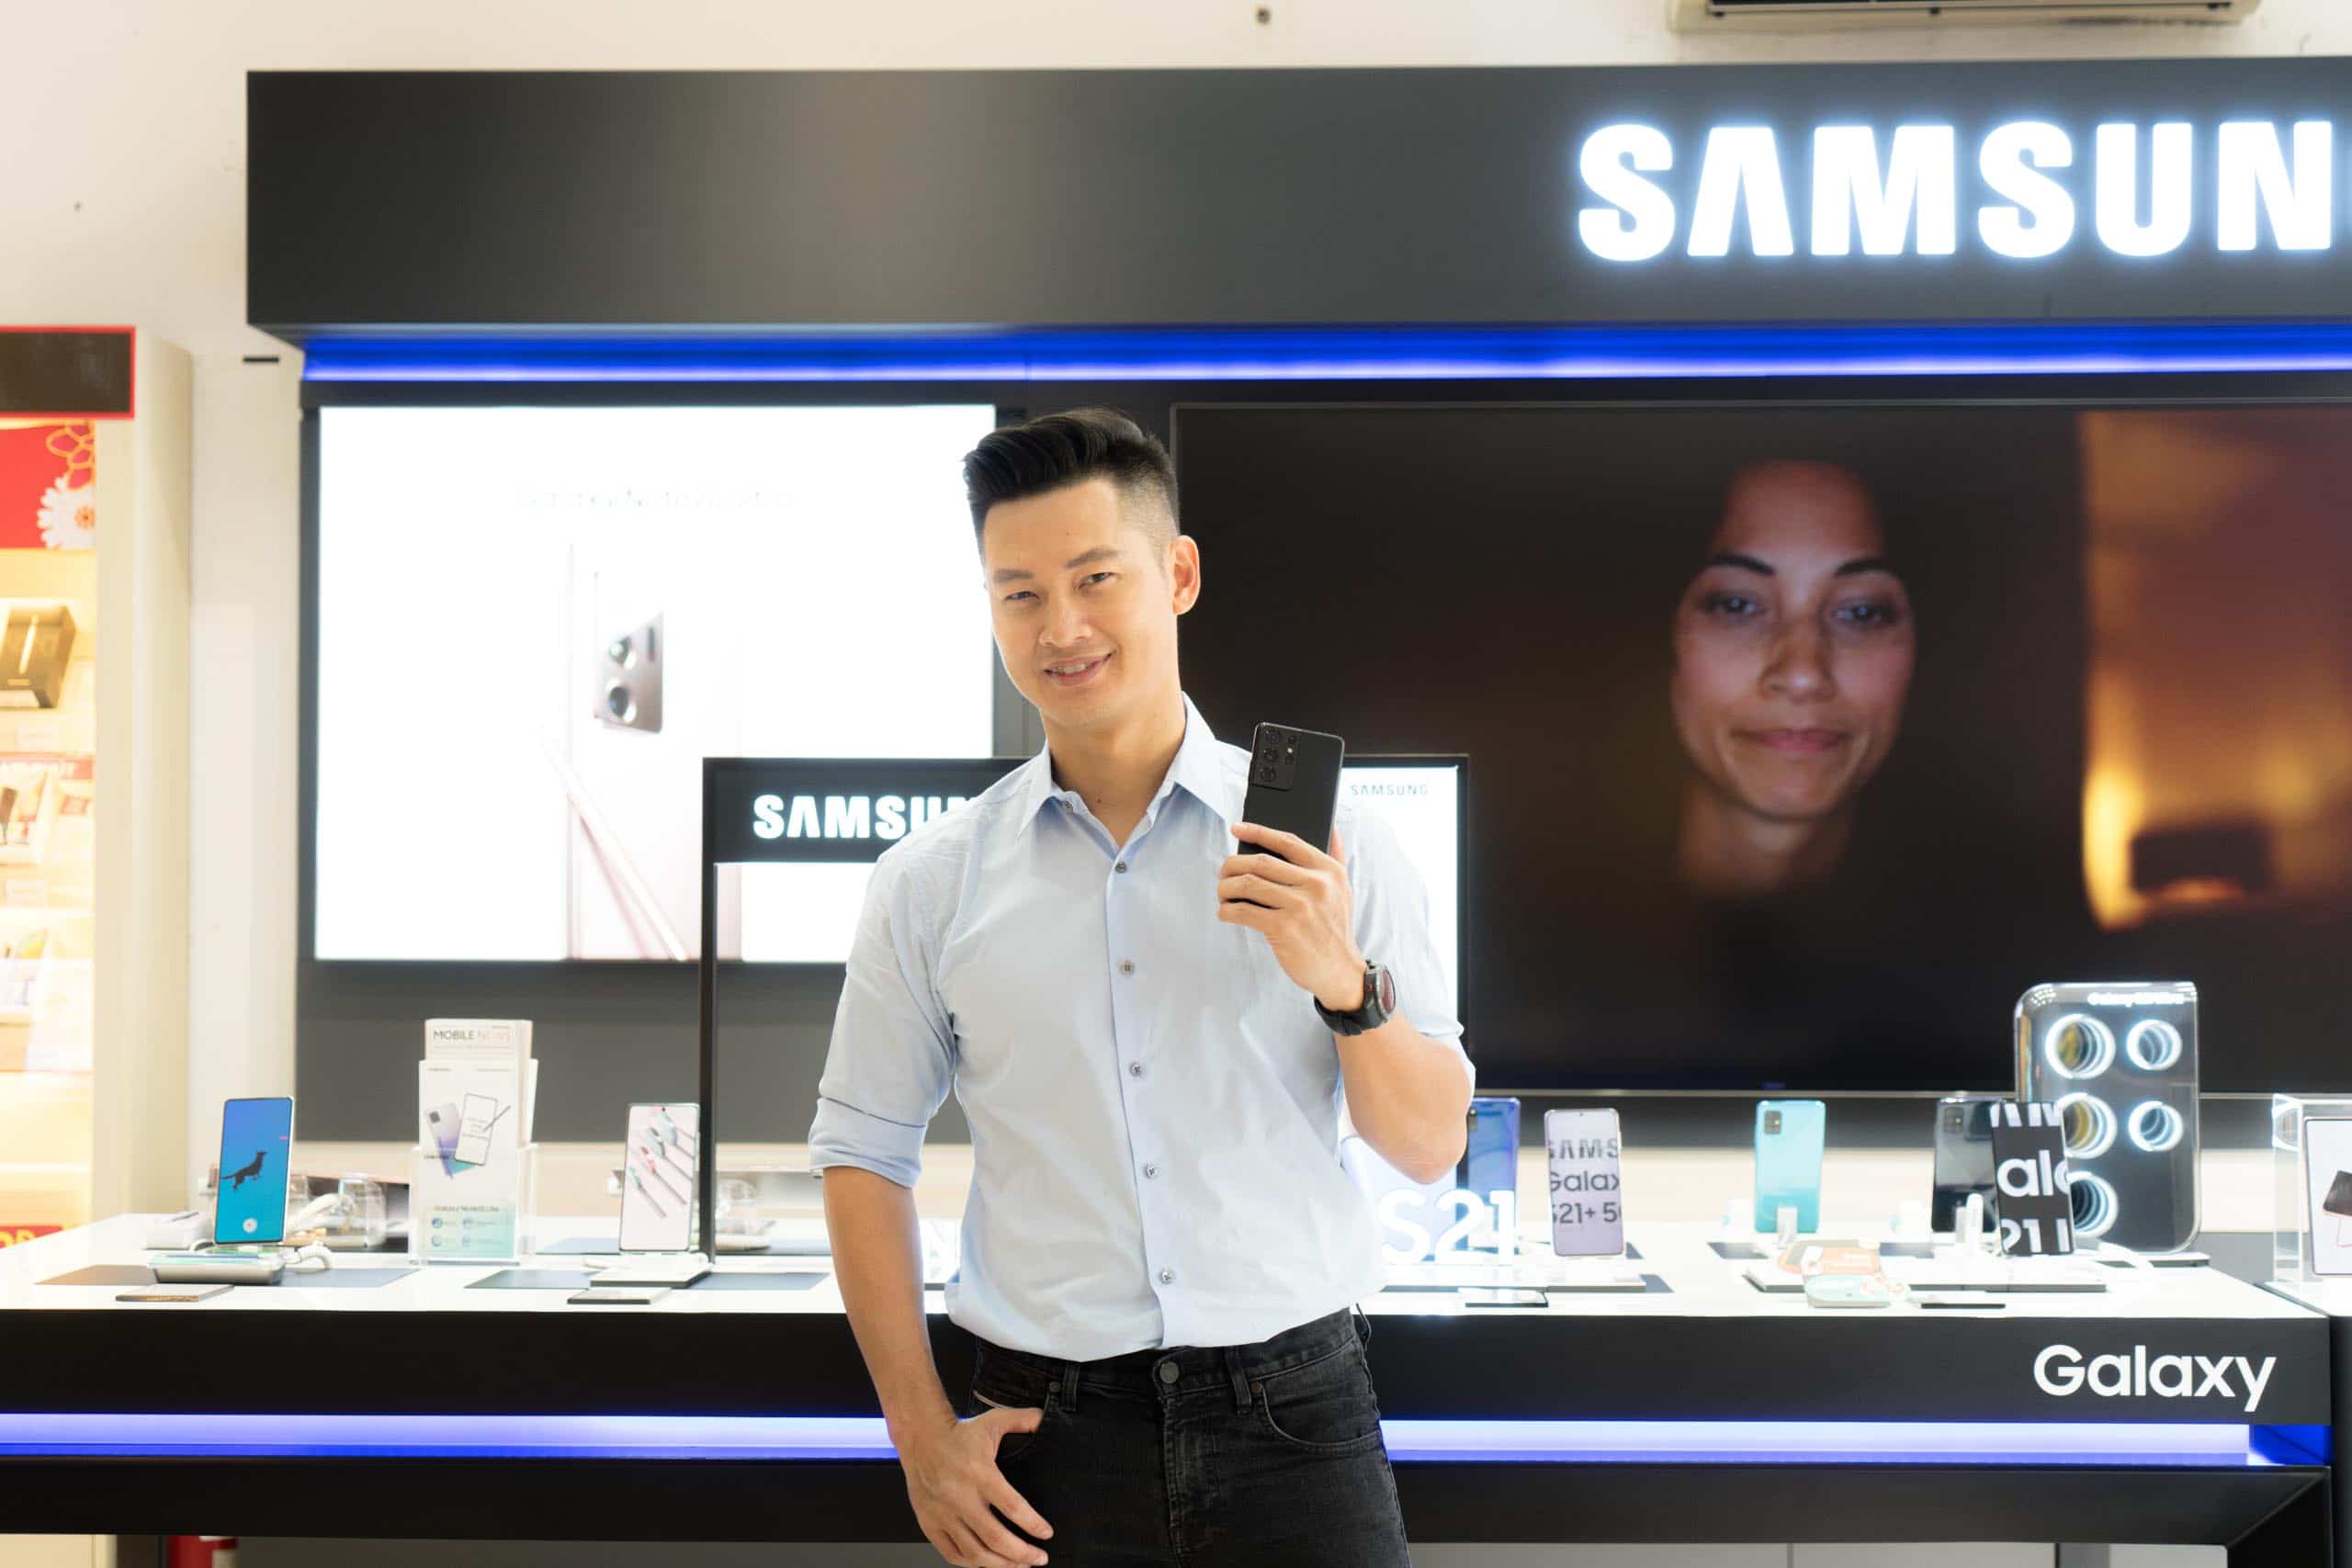 FPT Shop giao siêu phẩm Galaxy S21 Series đầu tiên tại Việt Nam cho khách hàng